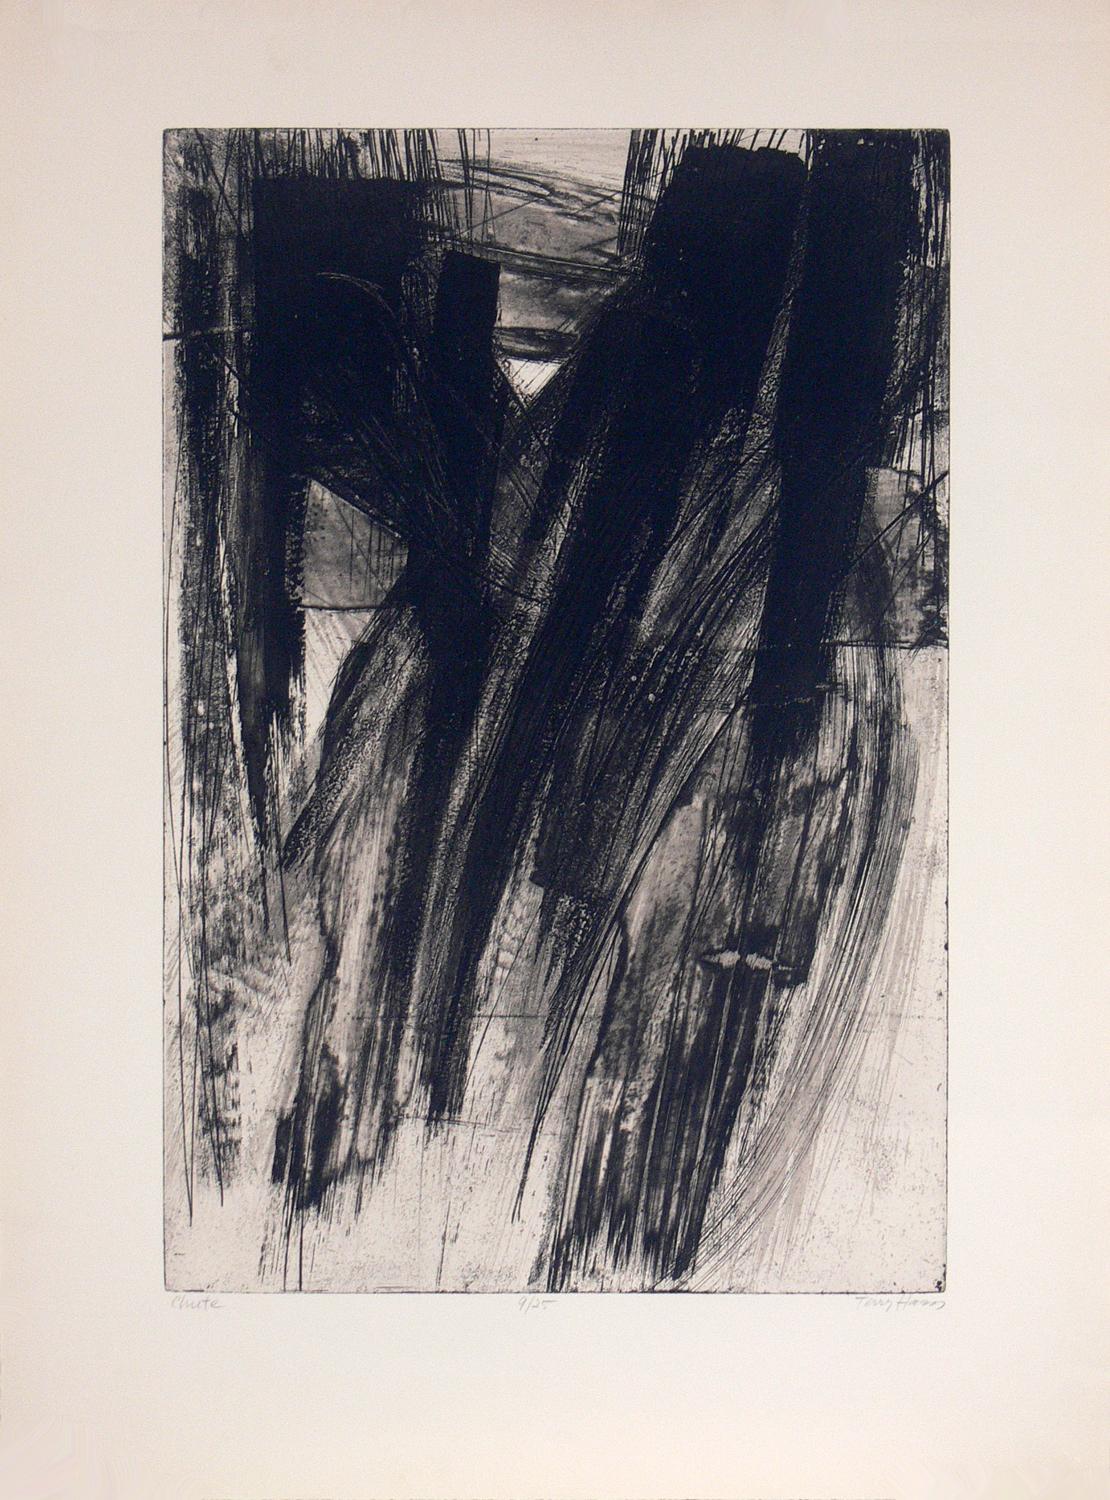 Auswahl an abstrakten Schwarz-Weiß-Drucken. Von links nach rechts sind dies:
1) Abstrakte Lithografie von Terry Haan, ca. 1960er Jahre. Bleistift signiert und nummeriert vom Künstler, Nummer 9 einer sehr limitierten Auflage von 25 Stück. Es misst